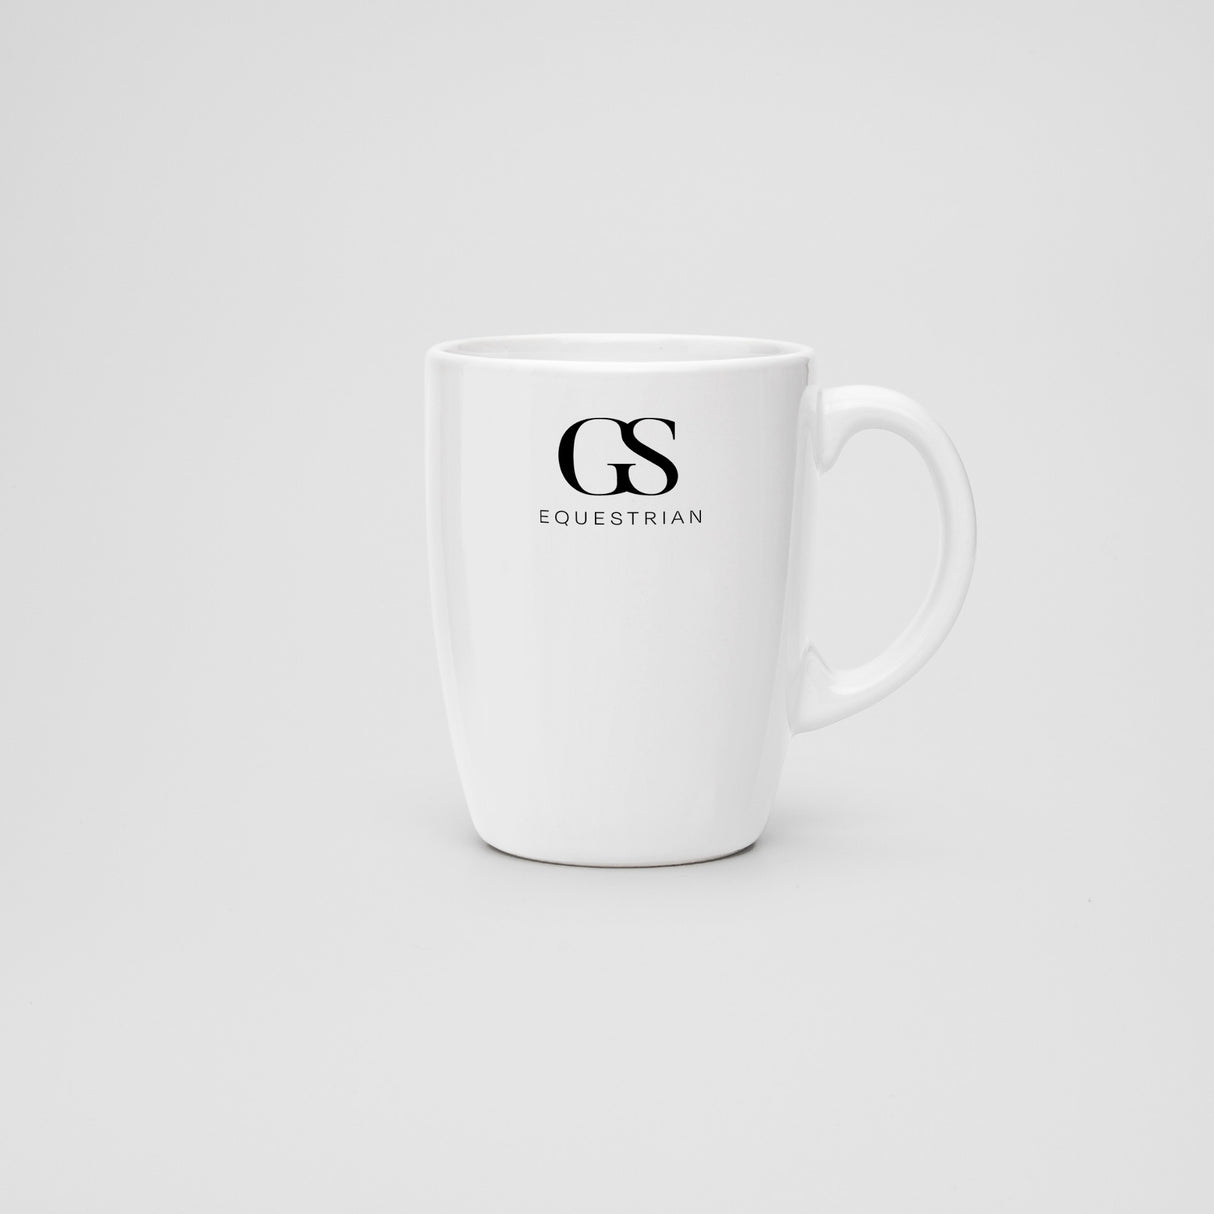 GS Equestrian Ceramic Mug